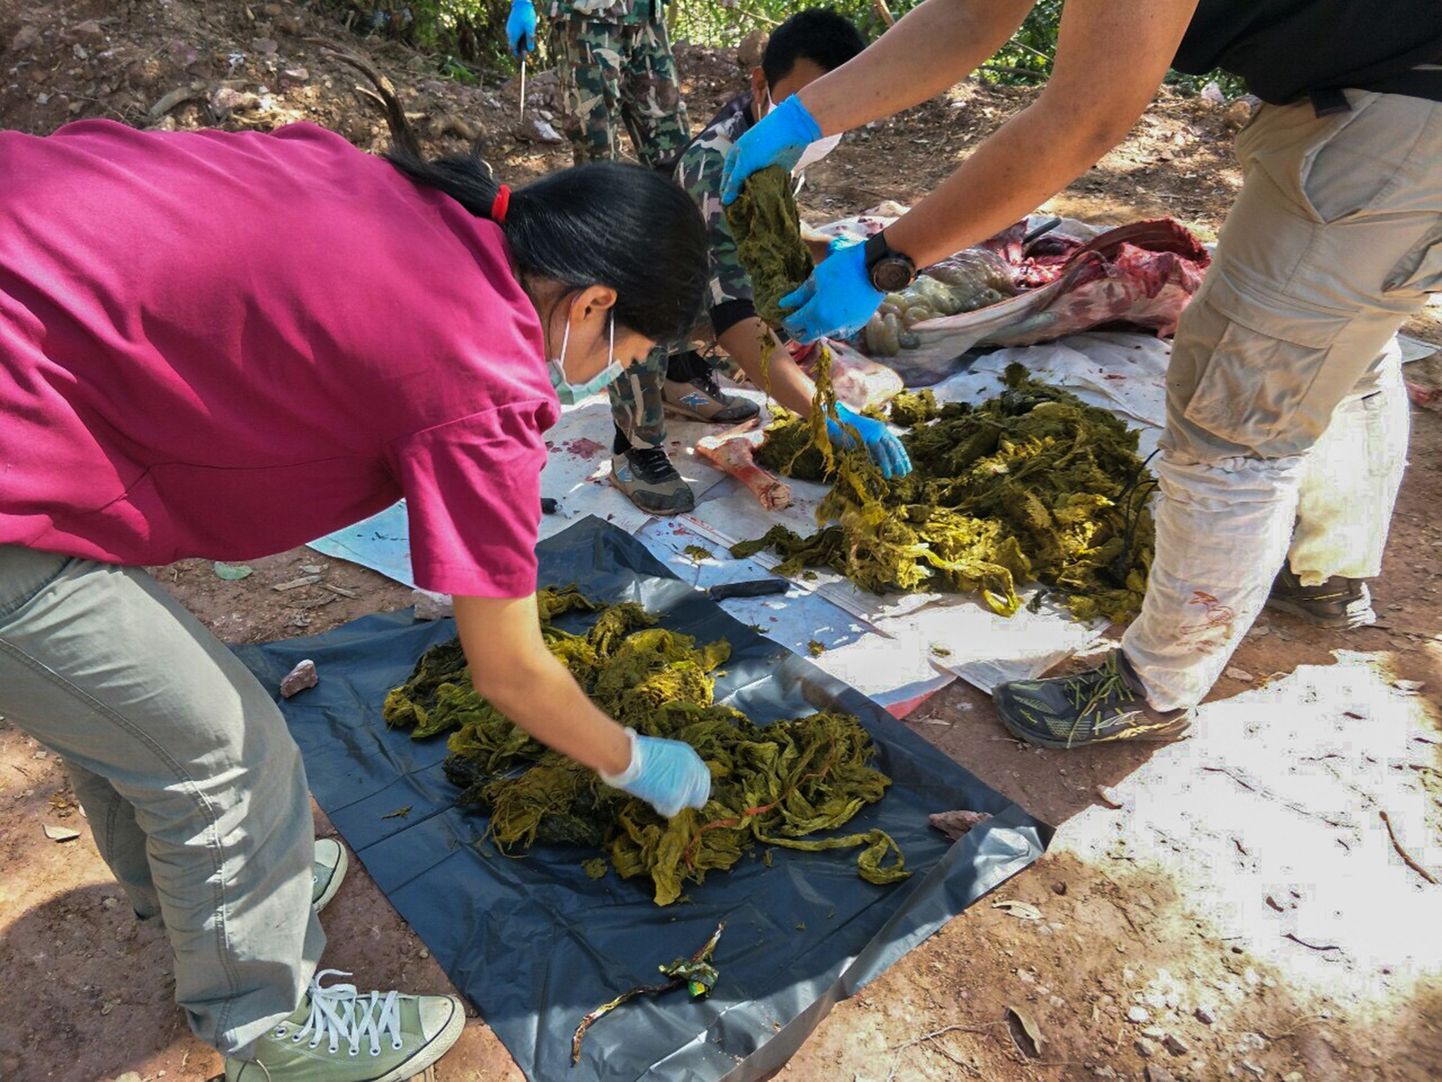 Khun Sathani rahvuspargis surnud hirve kõhust leitud plastik.